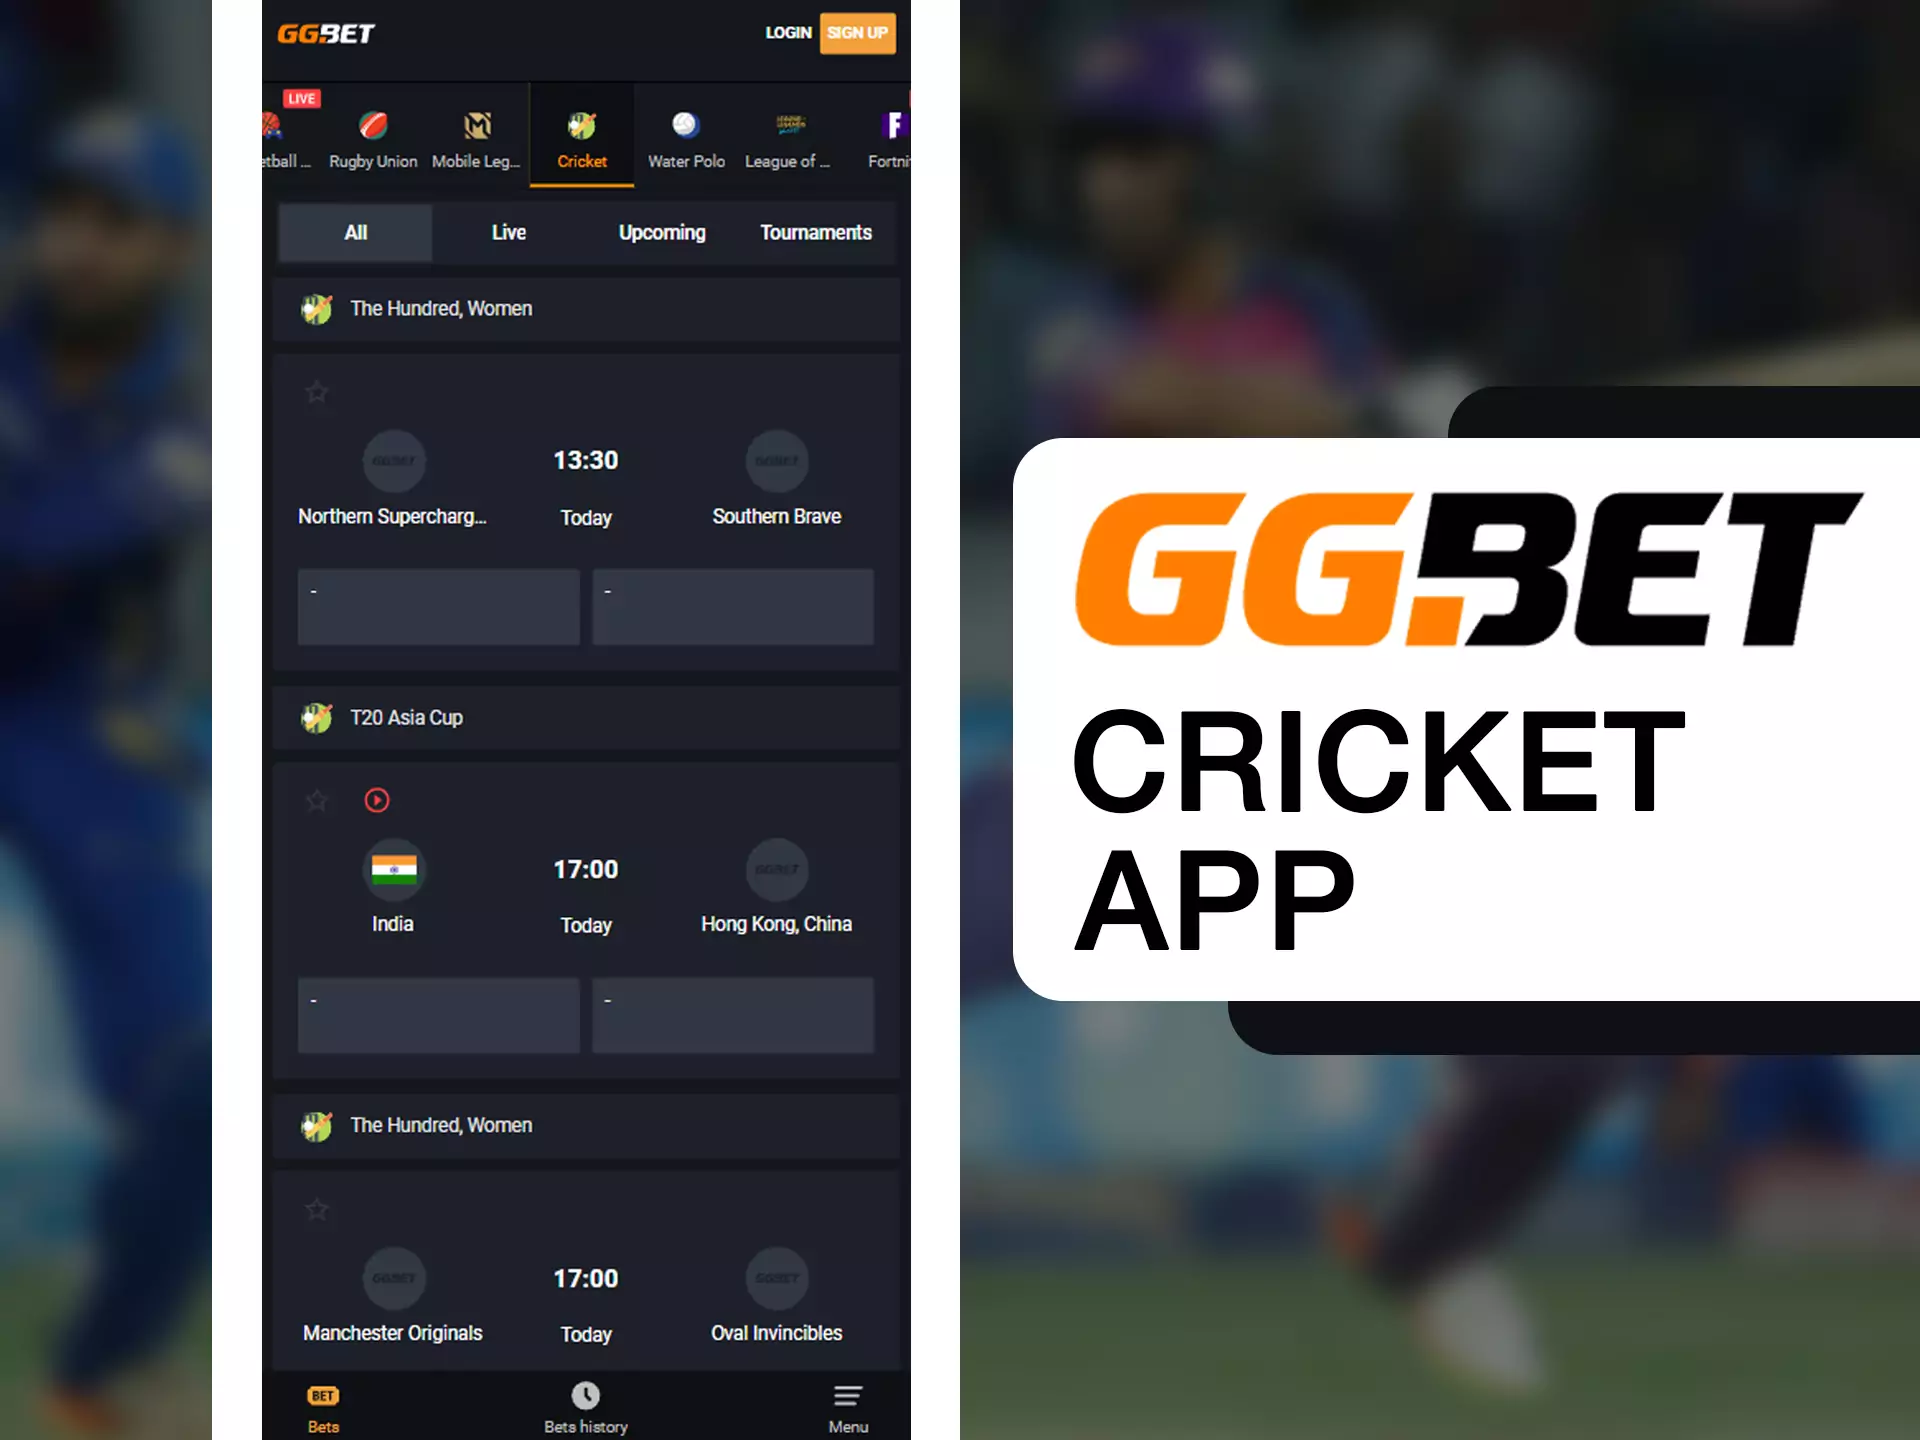 Bet on best cricket teams via GGBet app.